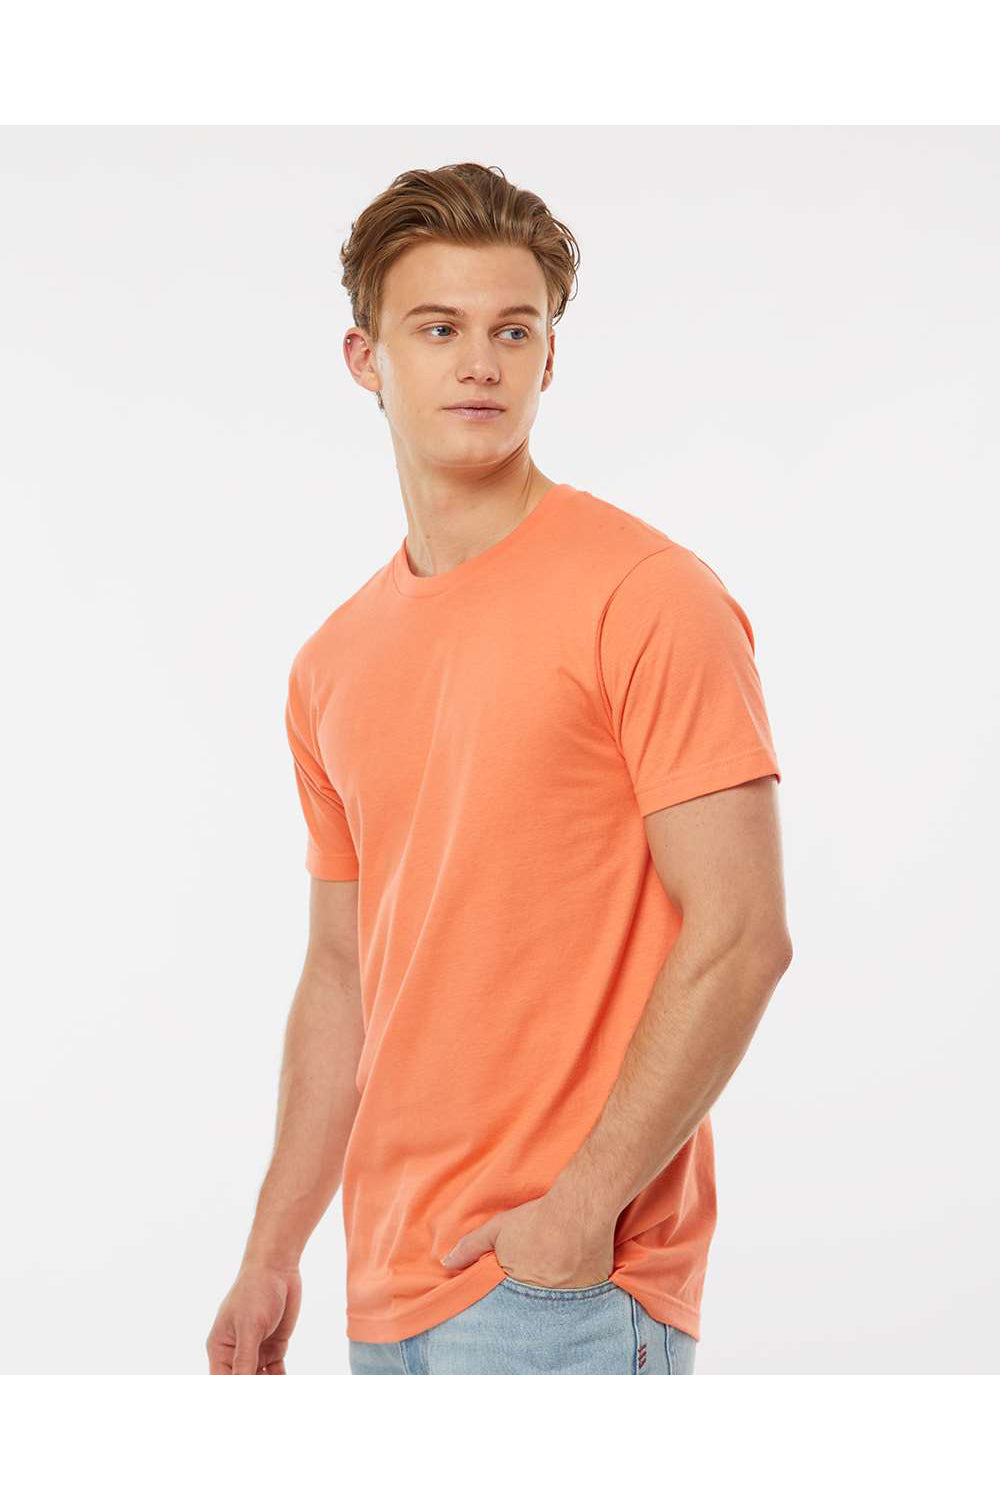 Tultex 202 Mens Fine Jersey Short Sleeve Crewneck T-Shirt Coral Orange Model Side